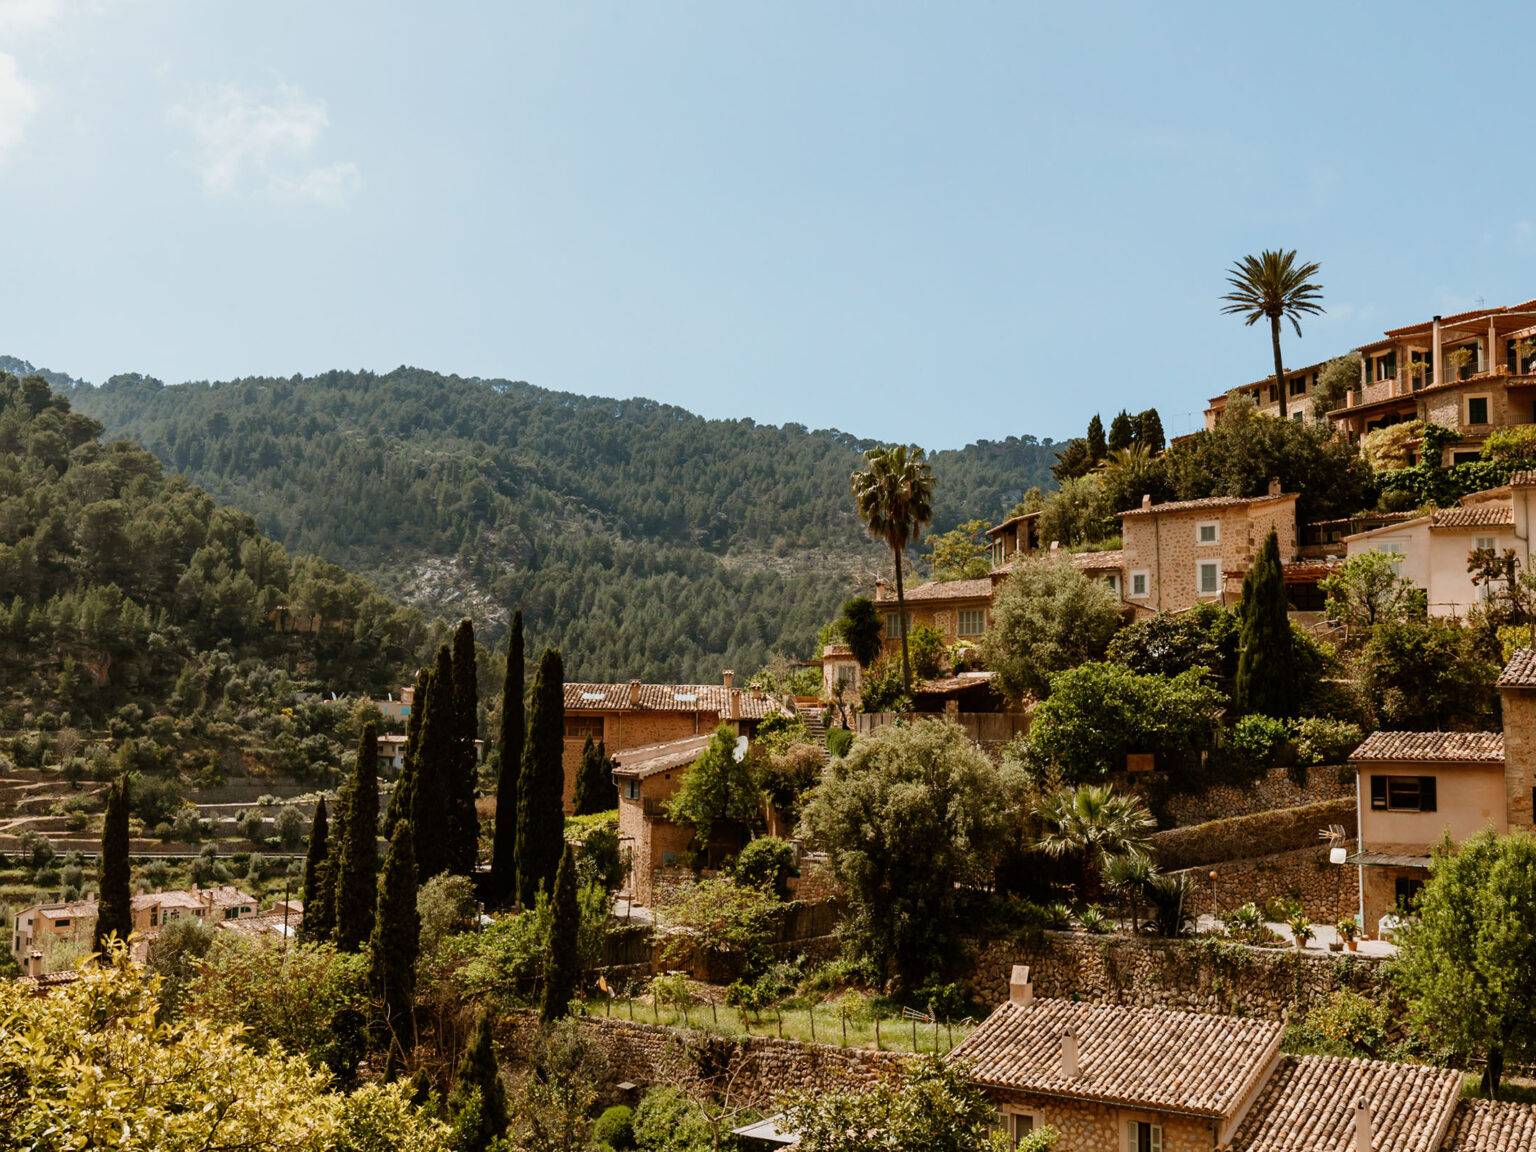 Mallorquinische Steinhäuser in Serra Tramuntana umgeben von einer grünen Berglandschaft.